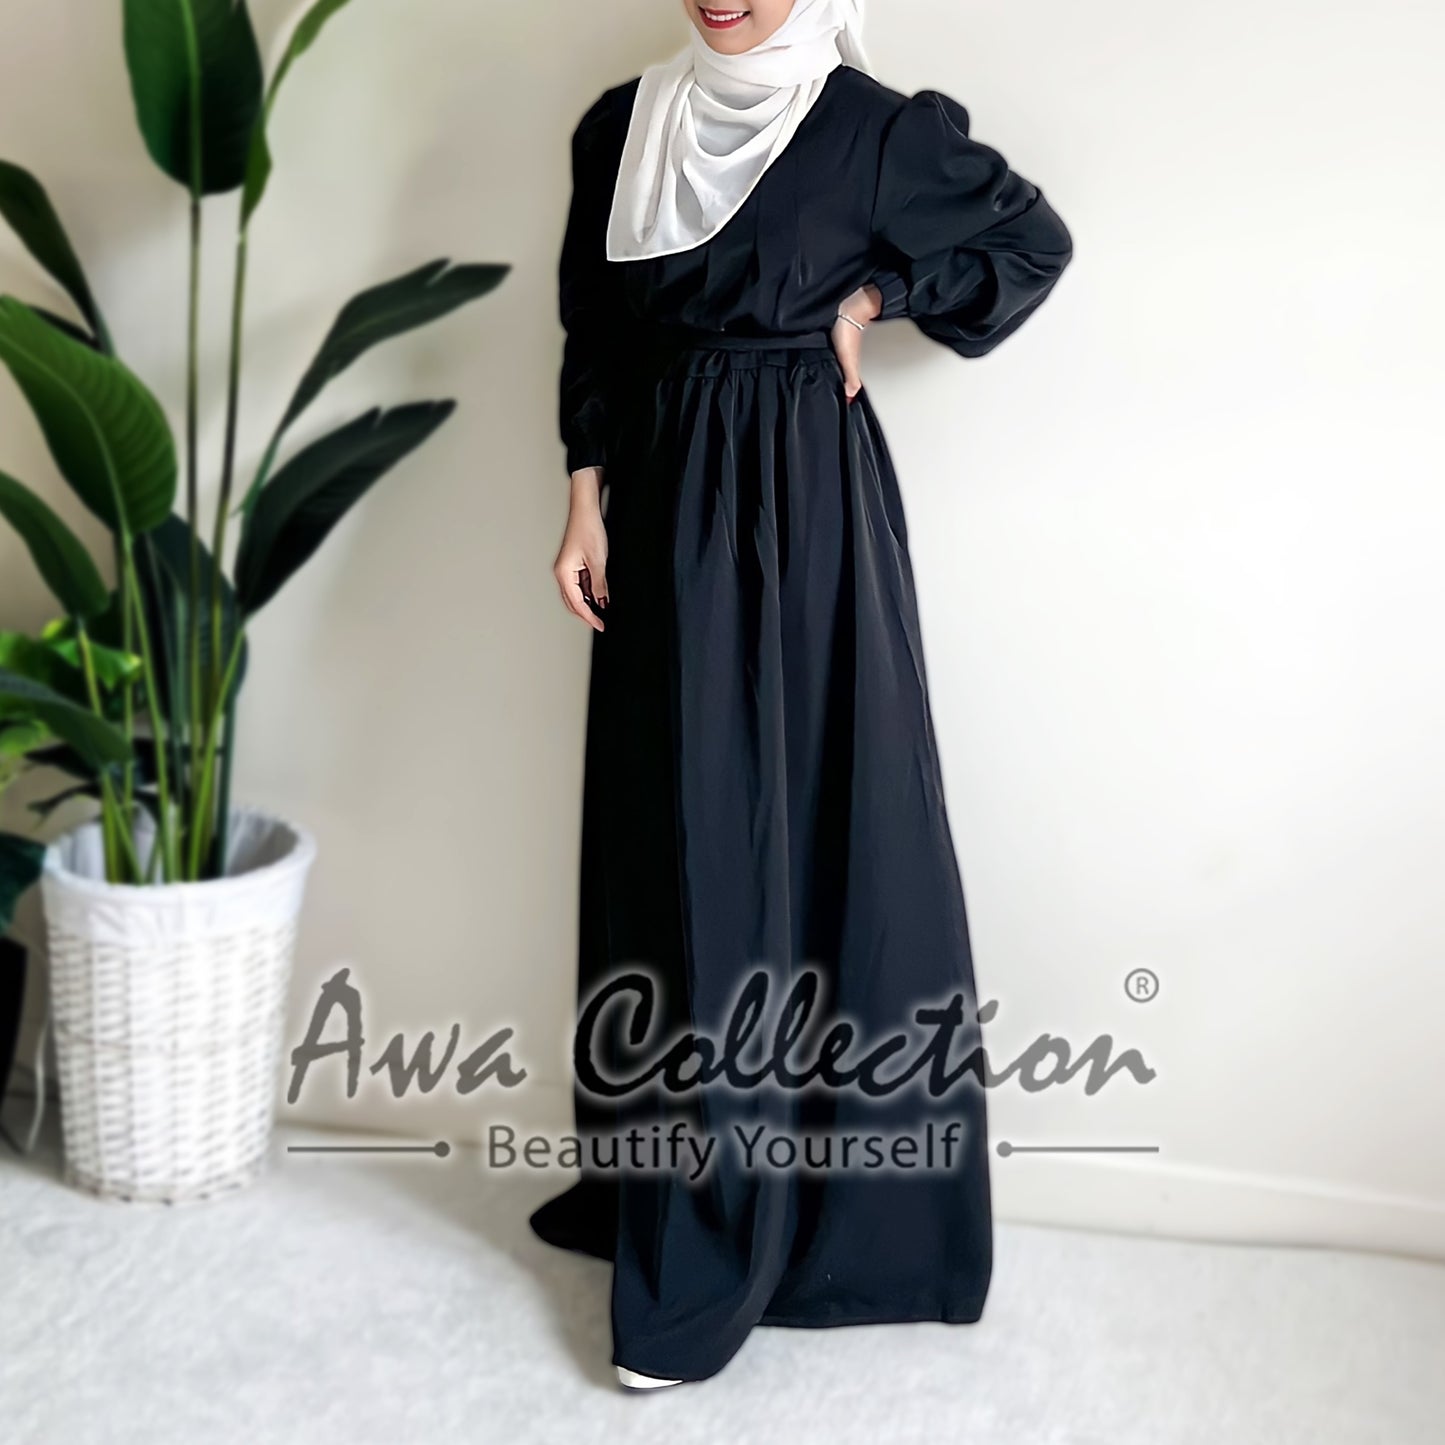 LALEESA Awa Collection DA111101 DRESS ZAHEERA Casual Elegant High Neck Puff Sleeve Dress Muslimah Dress Women Dress